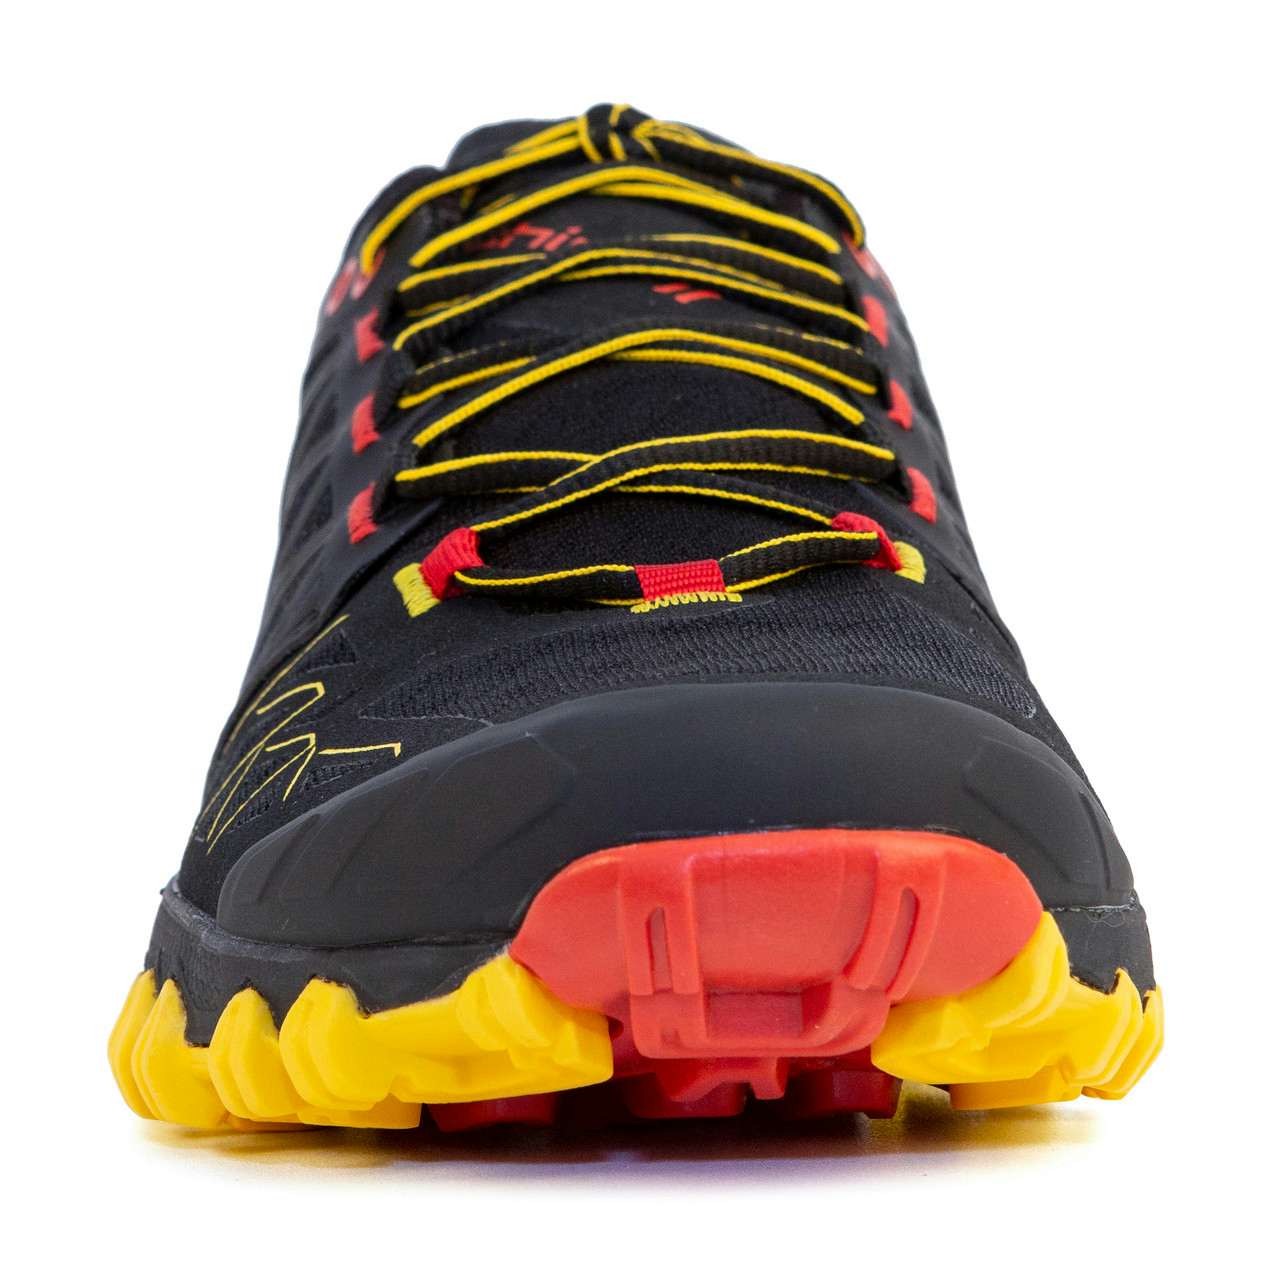 Bushido II Gore-Tex Trail Running Shoes Black/Yellow